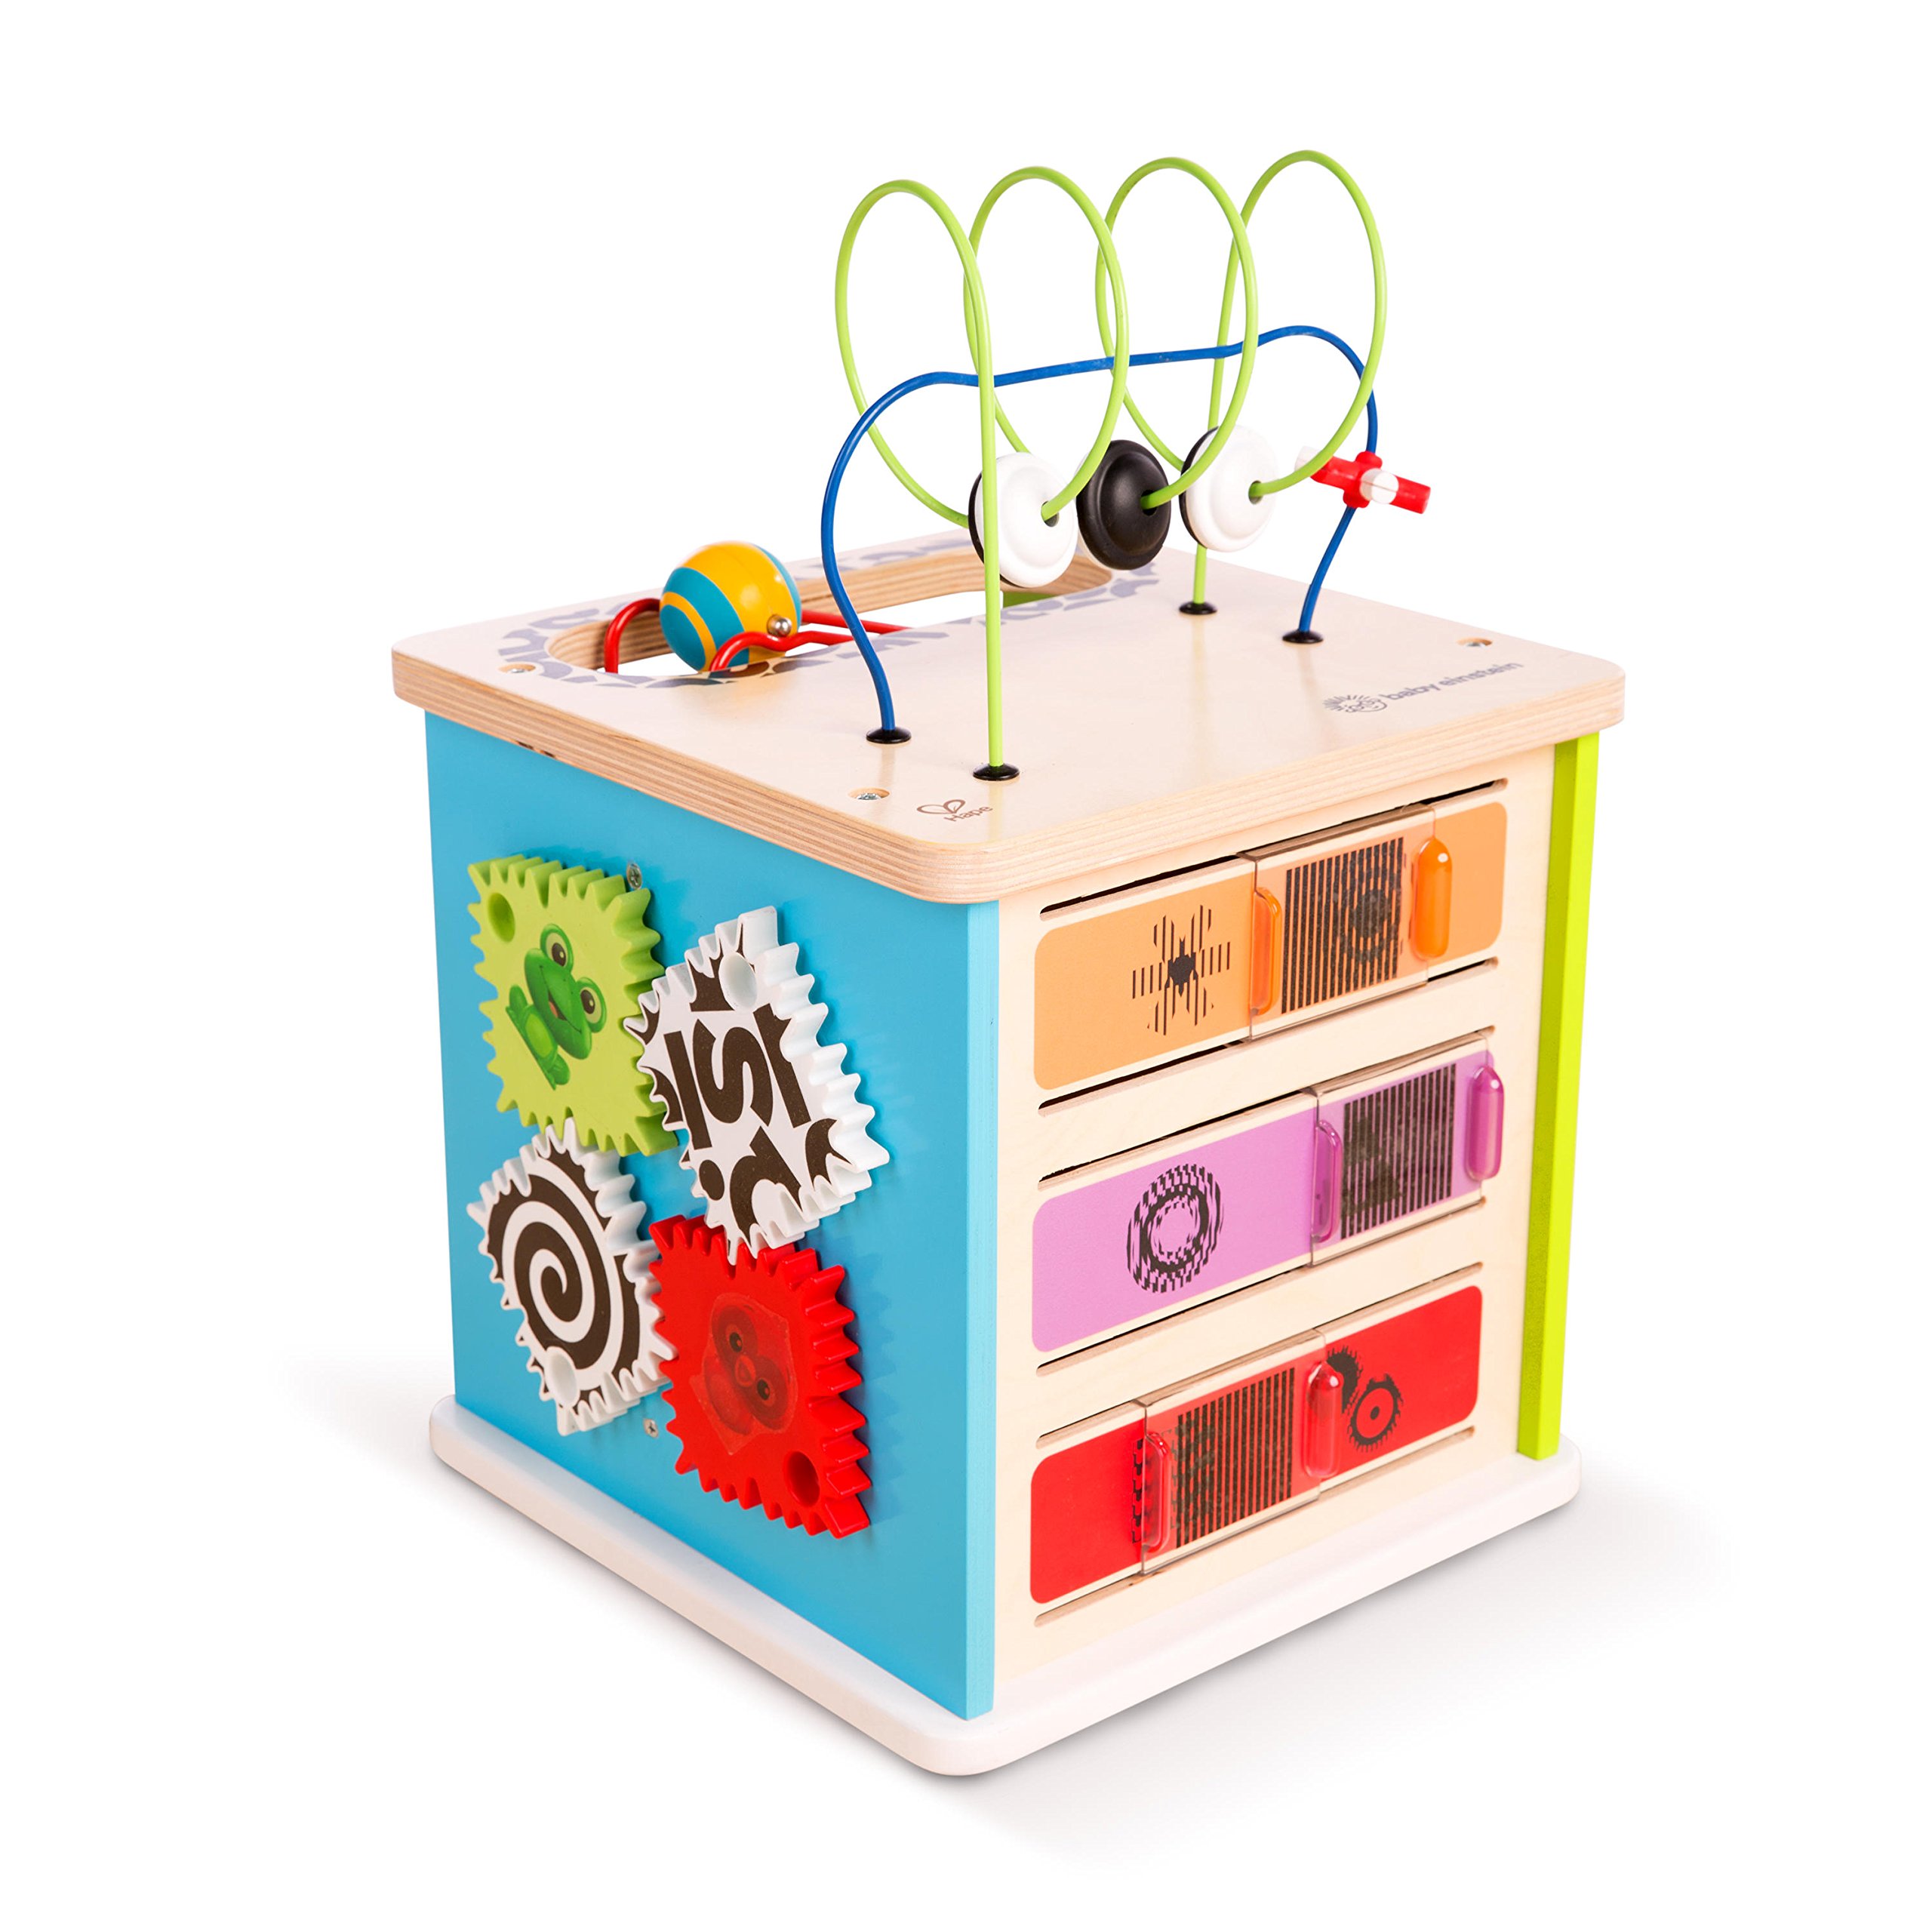 Baby Einstein 11656-6 Hape Motorikwürfel Innovationsstation Holzspielzeug mit zahlreichen Spielmöglichkeiten, ab 12 Monaten Innovation Station Aktivitätswürfel, Mehrfarbig, 1 Count (Pack of 1)